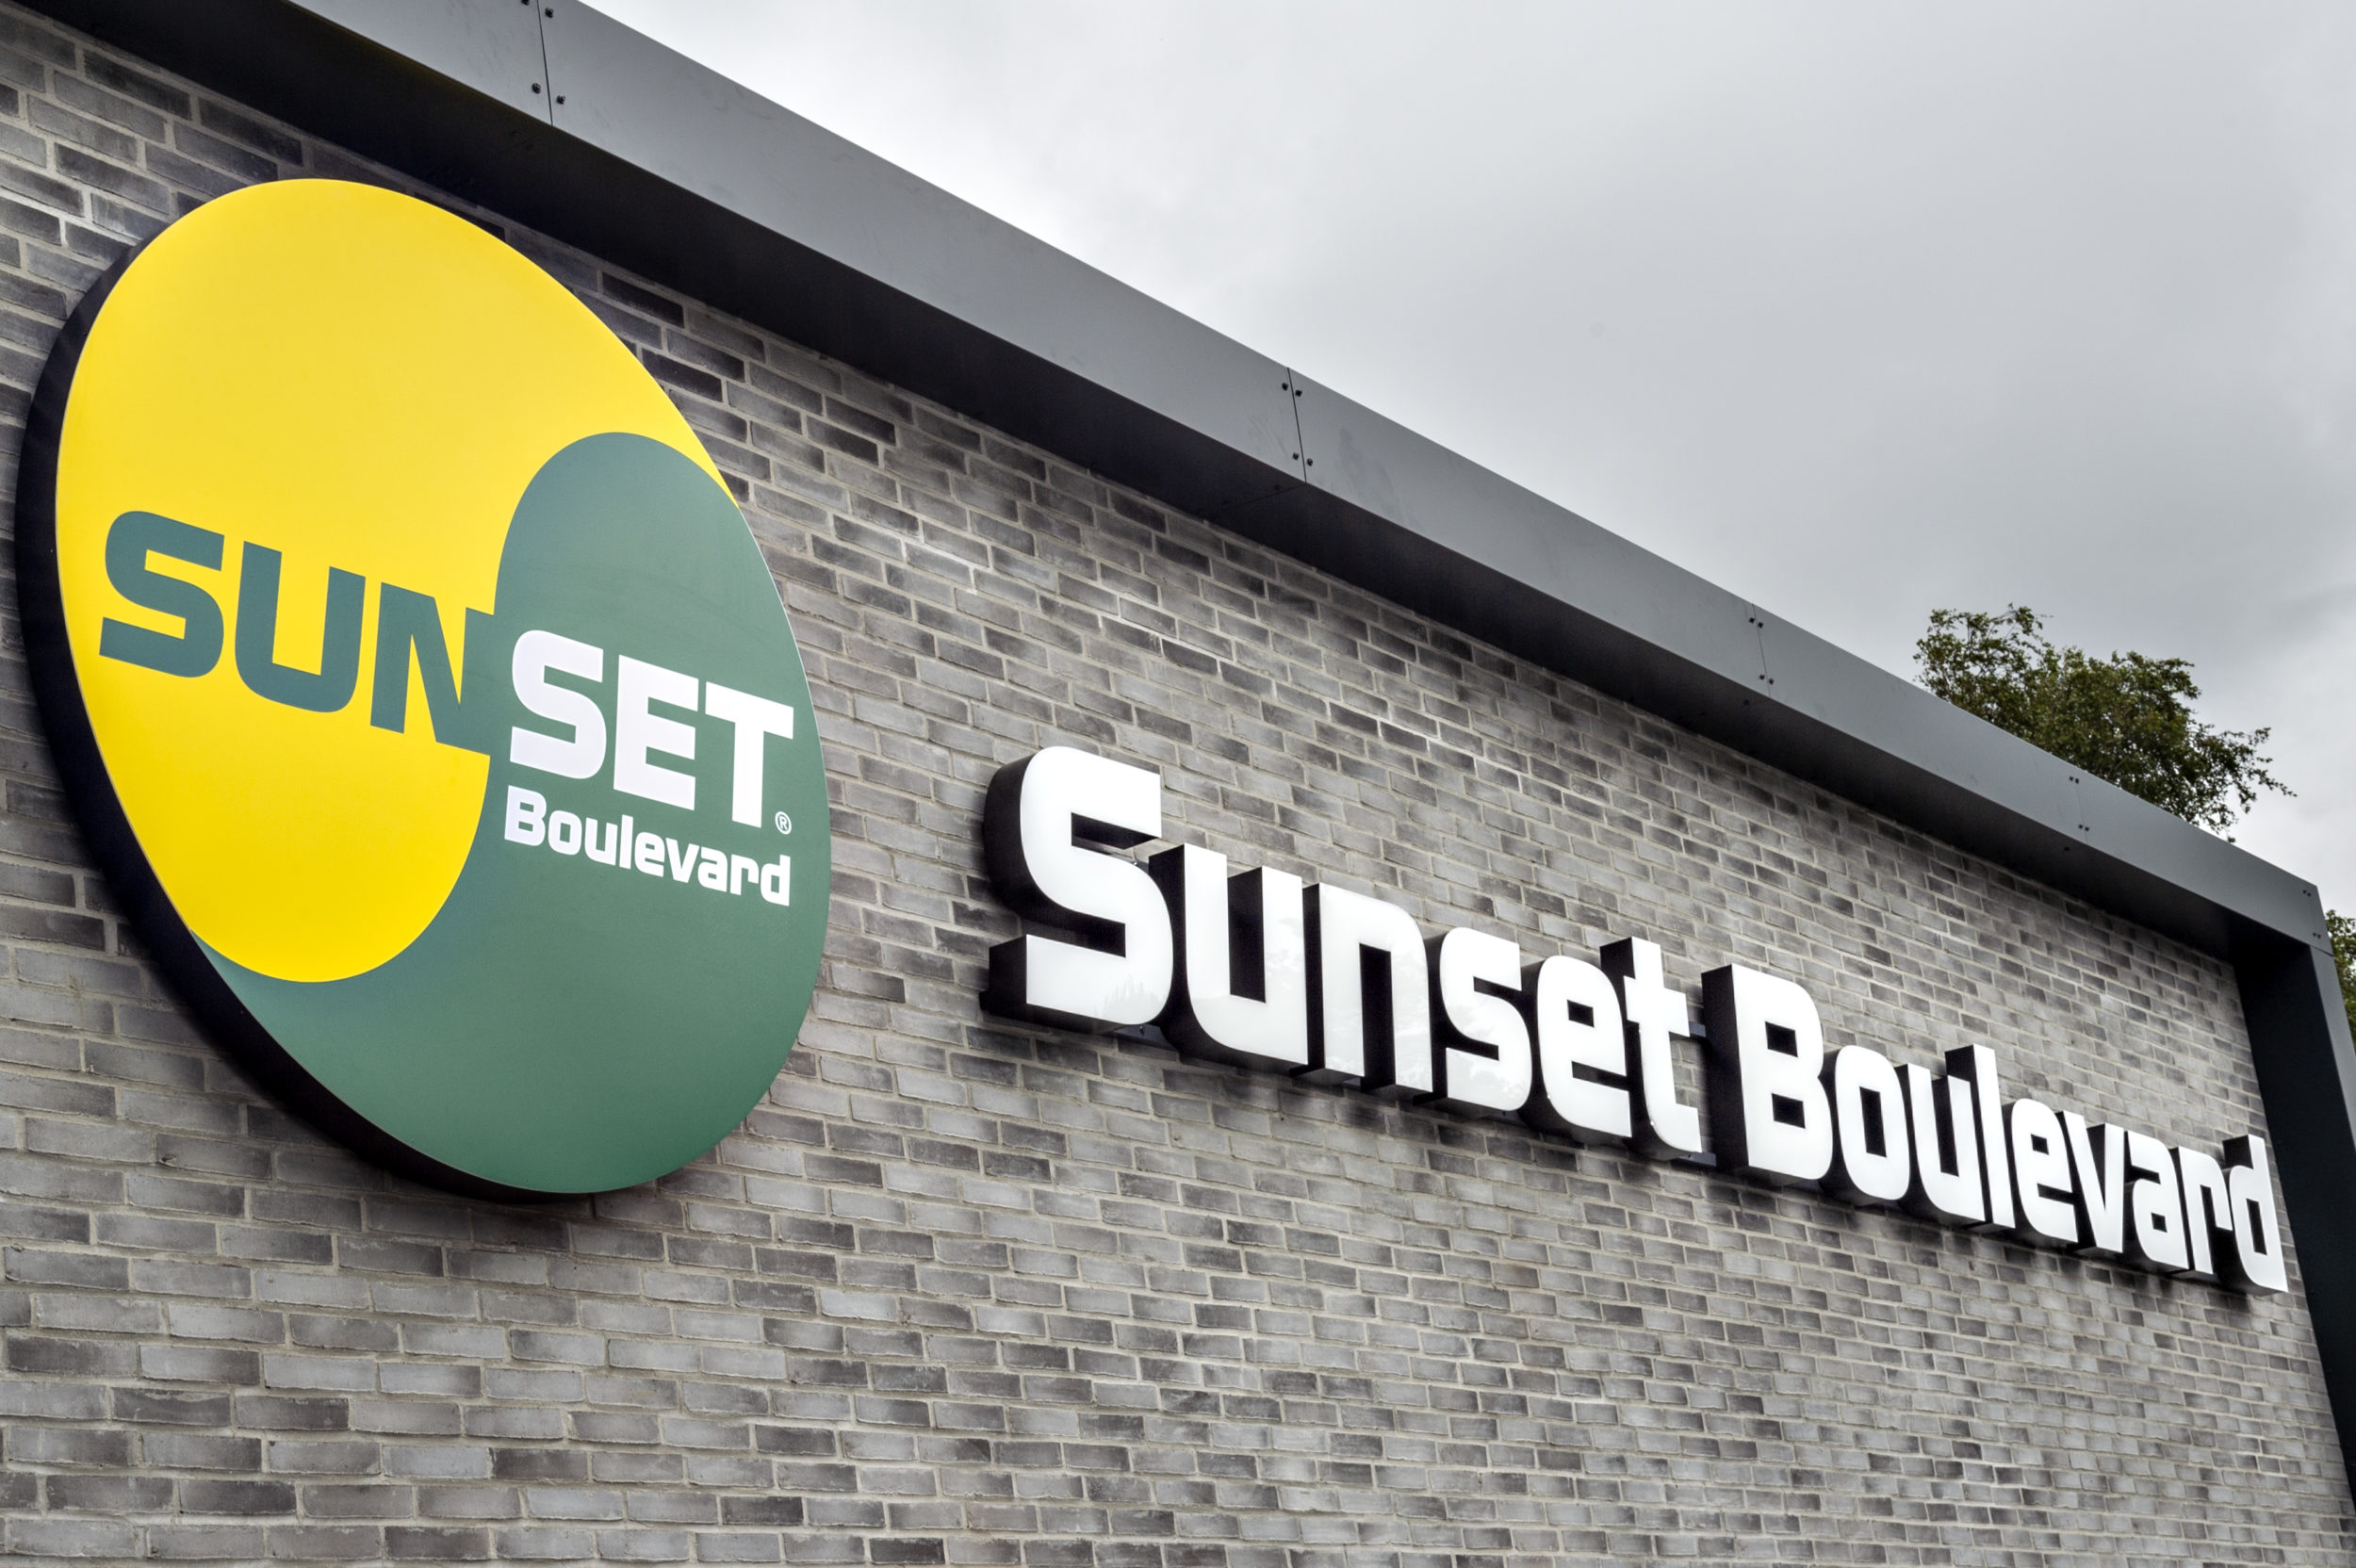 Sunset Boulevard er en danskejet fastfood-kæde med 44 restauranter i Danmark, en på Færøerne og en i USA. Åbning af den 44. restaturant i Odense, Odense, torsdag den 4. juli 2019.